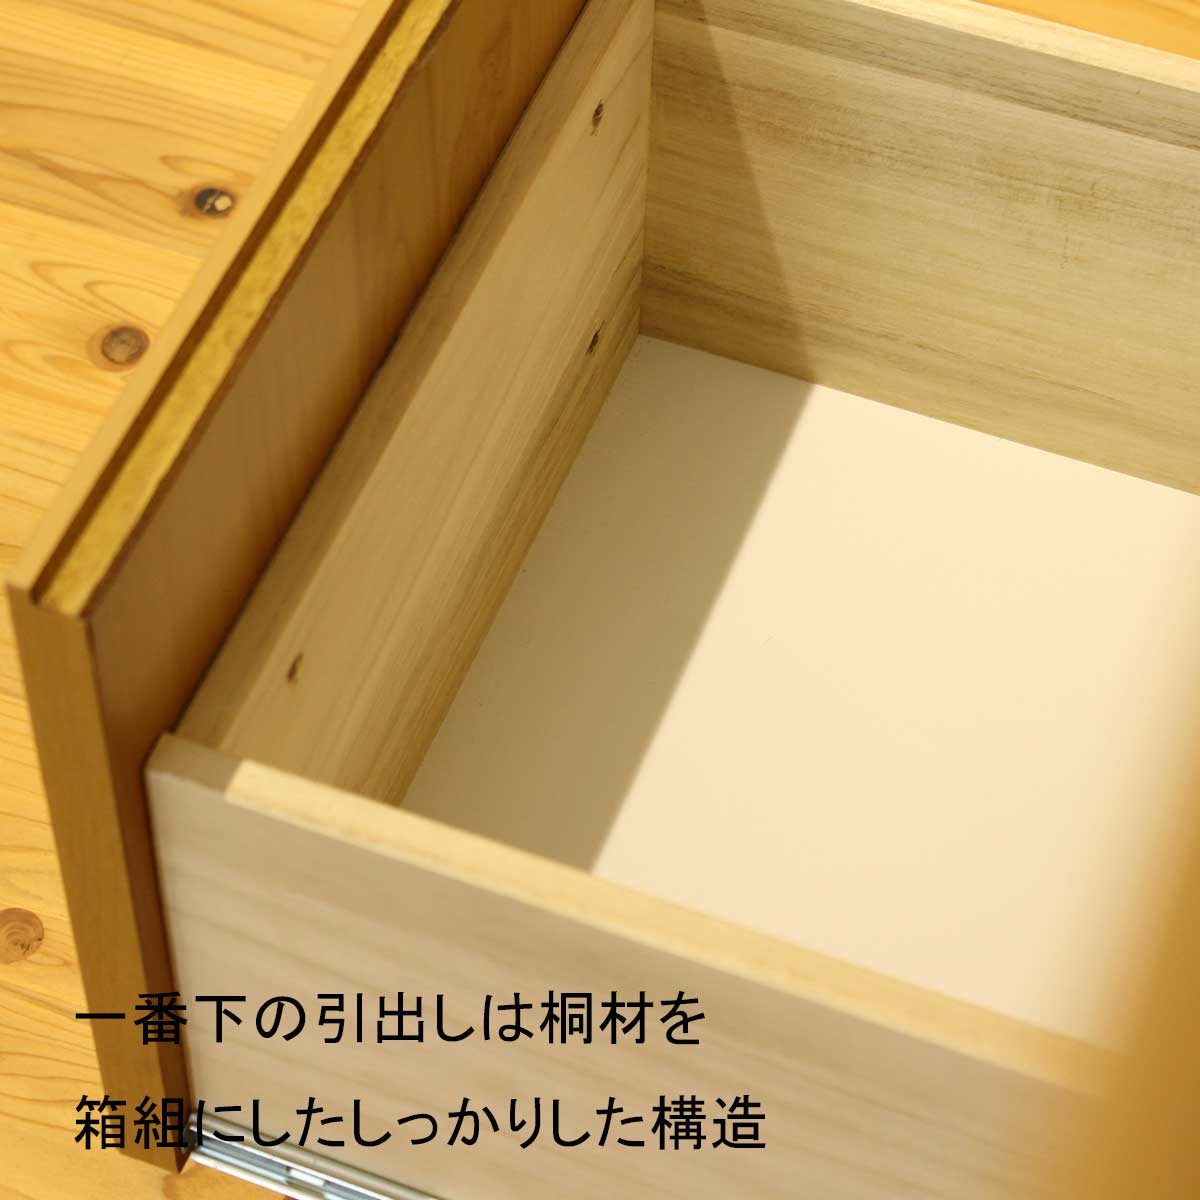 120センチ幅キッチンカウンター「メモリーⅡ」は、一番下の引出しは桐材を箱組にしたしっかりした構造